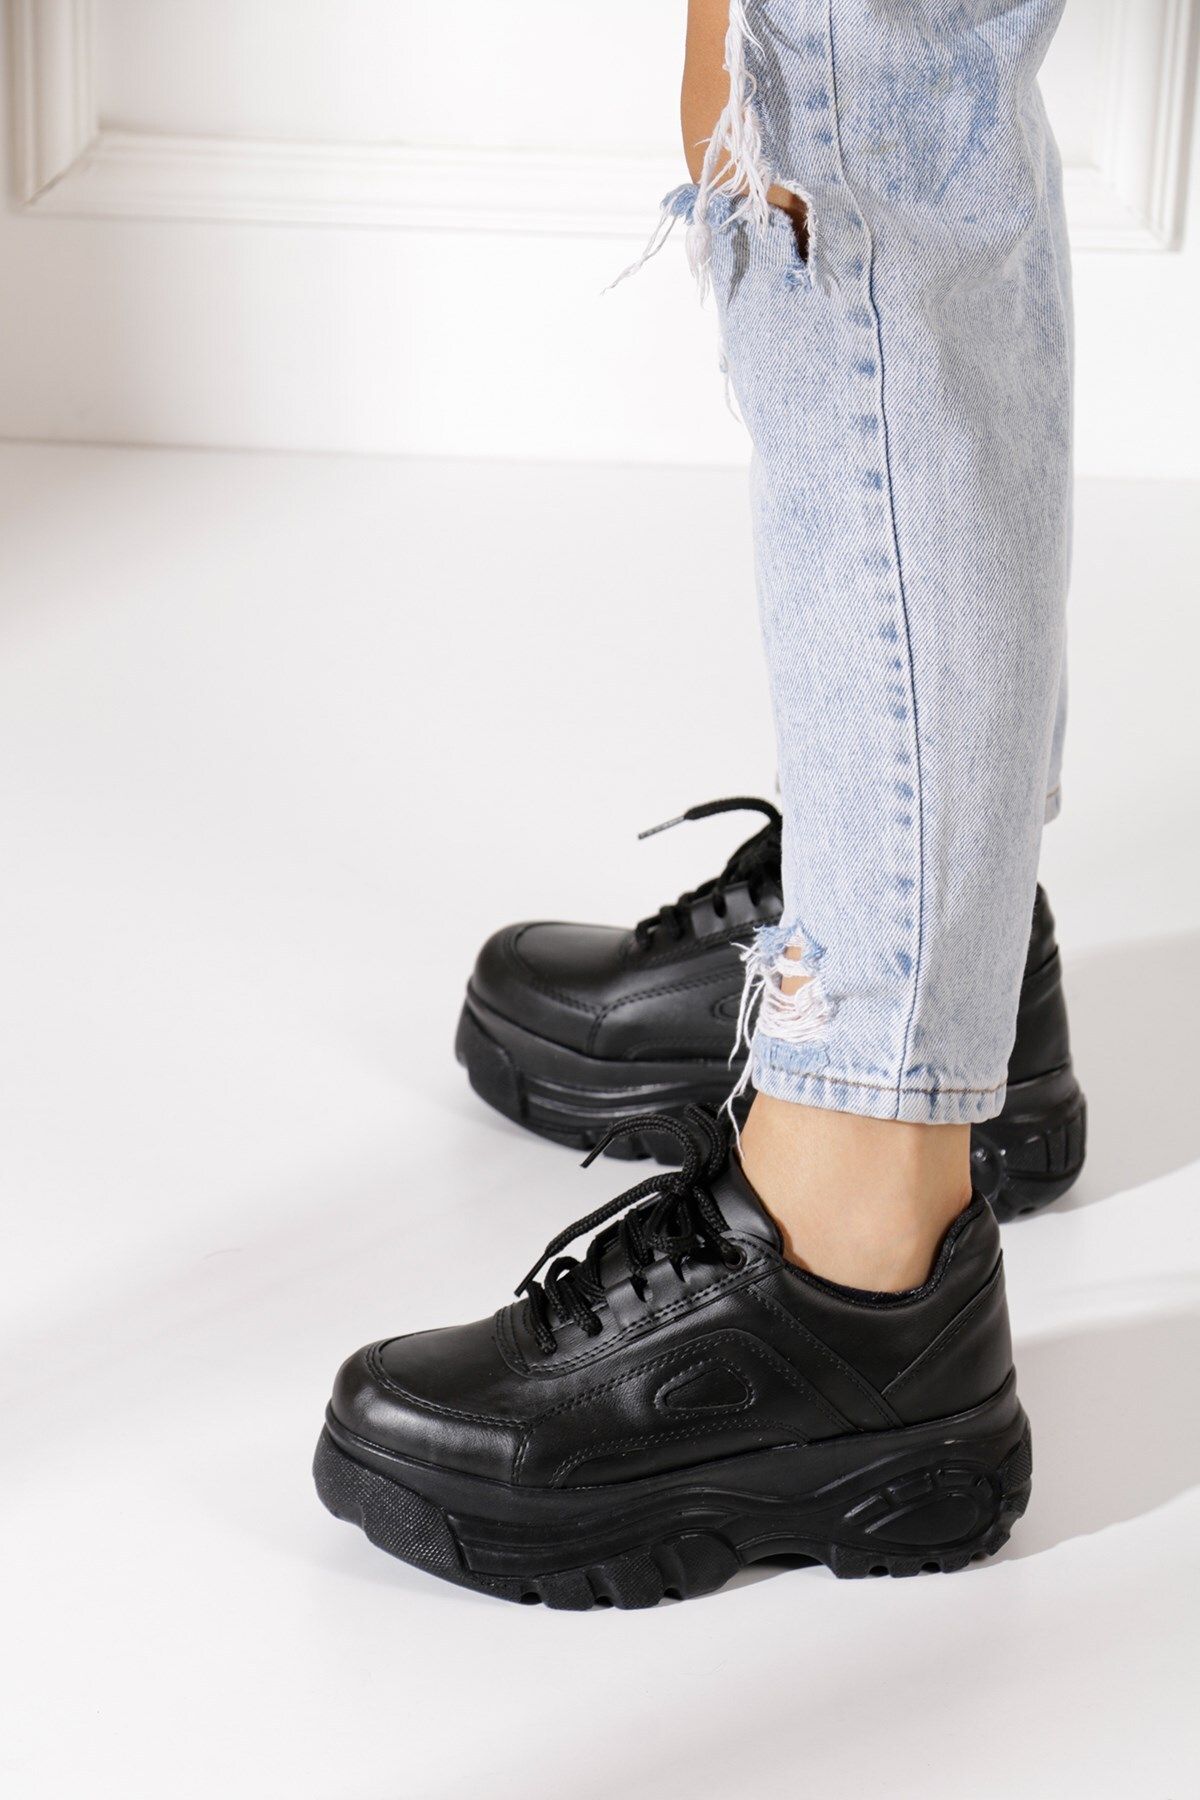 Allyup Günlük Kadın Siyah Deri Spor Ayakkabı 6 Cm Yüksek Taban Hafif Rahat Bağcıklı Sneaker 001